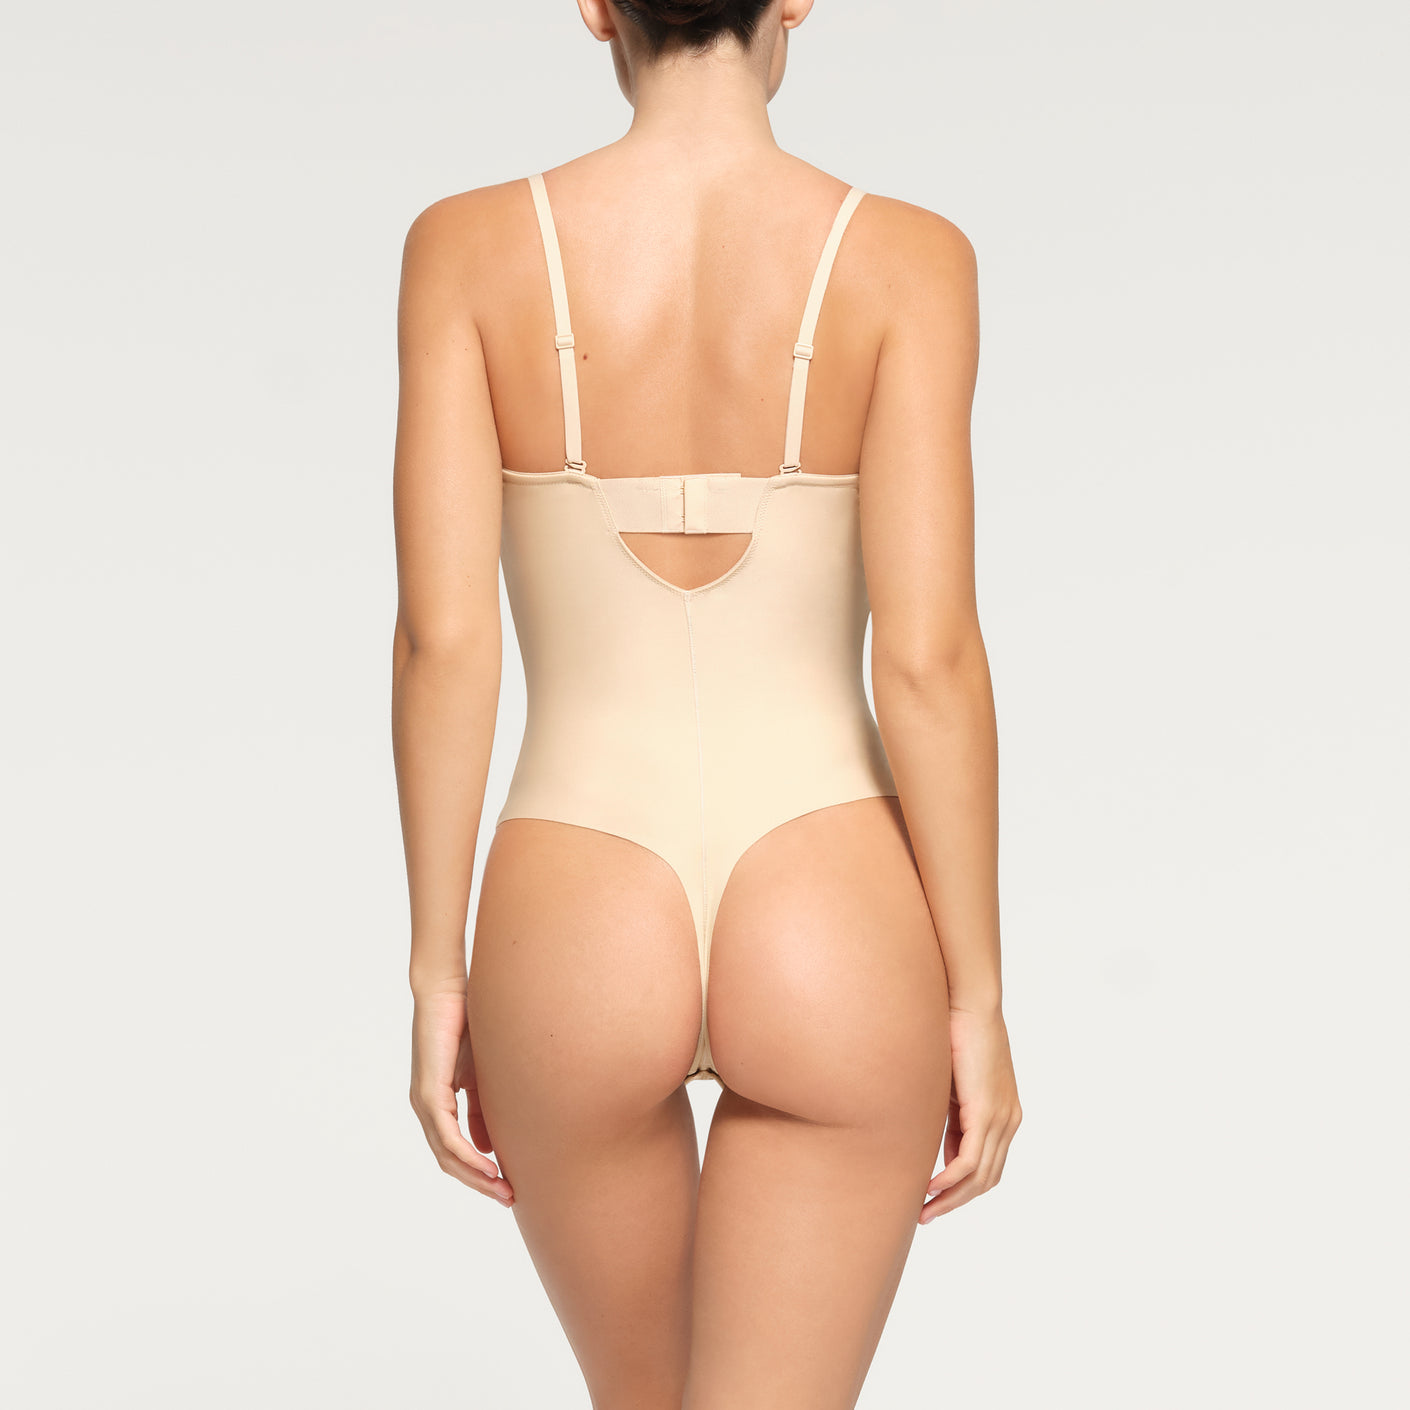 Seamless Shapewear Bodysuit Short Beige by Cotton On Body Online